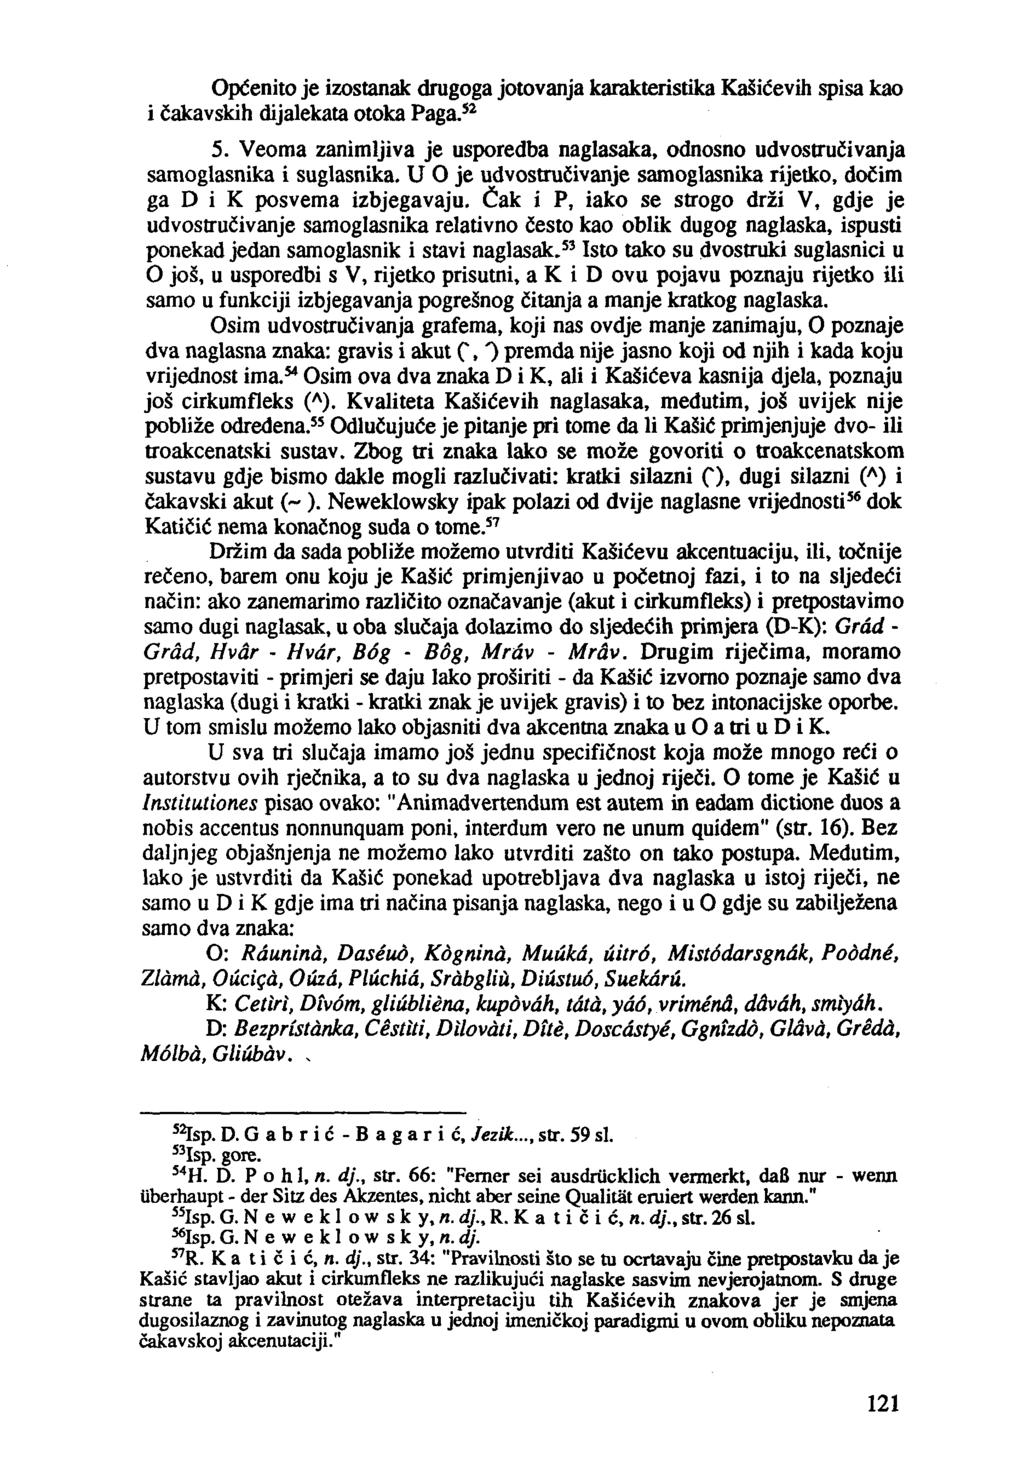 OpCenito je izostanak drugoga jotovanja karakteristika KaSicevih spisa kao i cakavskih dijalekata otoka Paga.s 2 5.